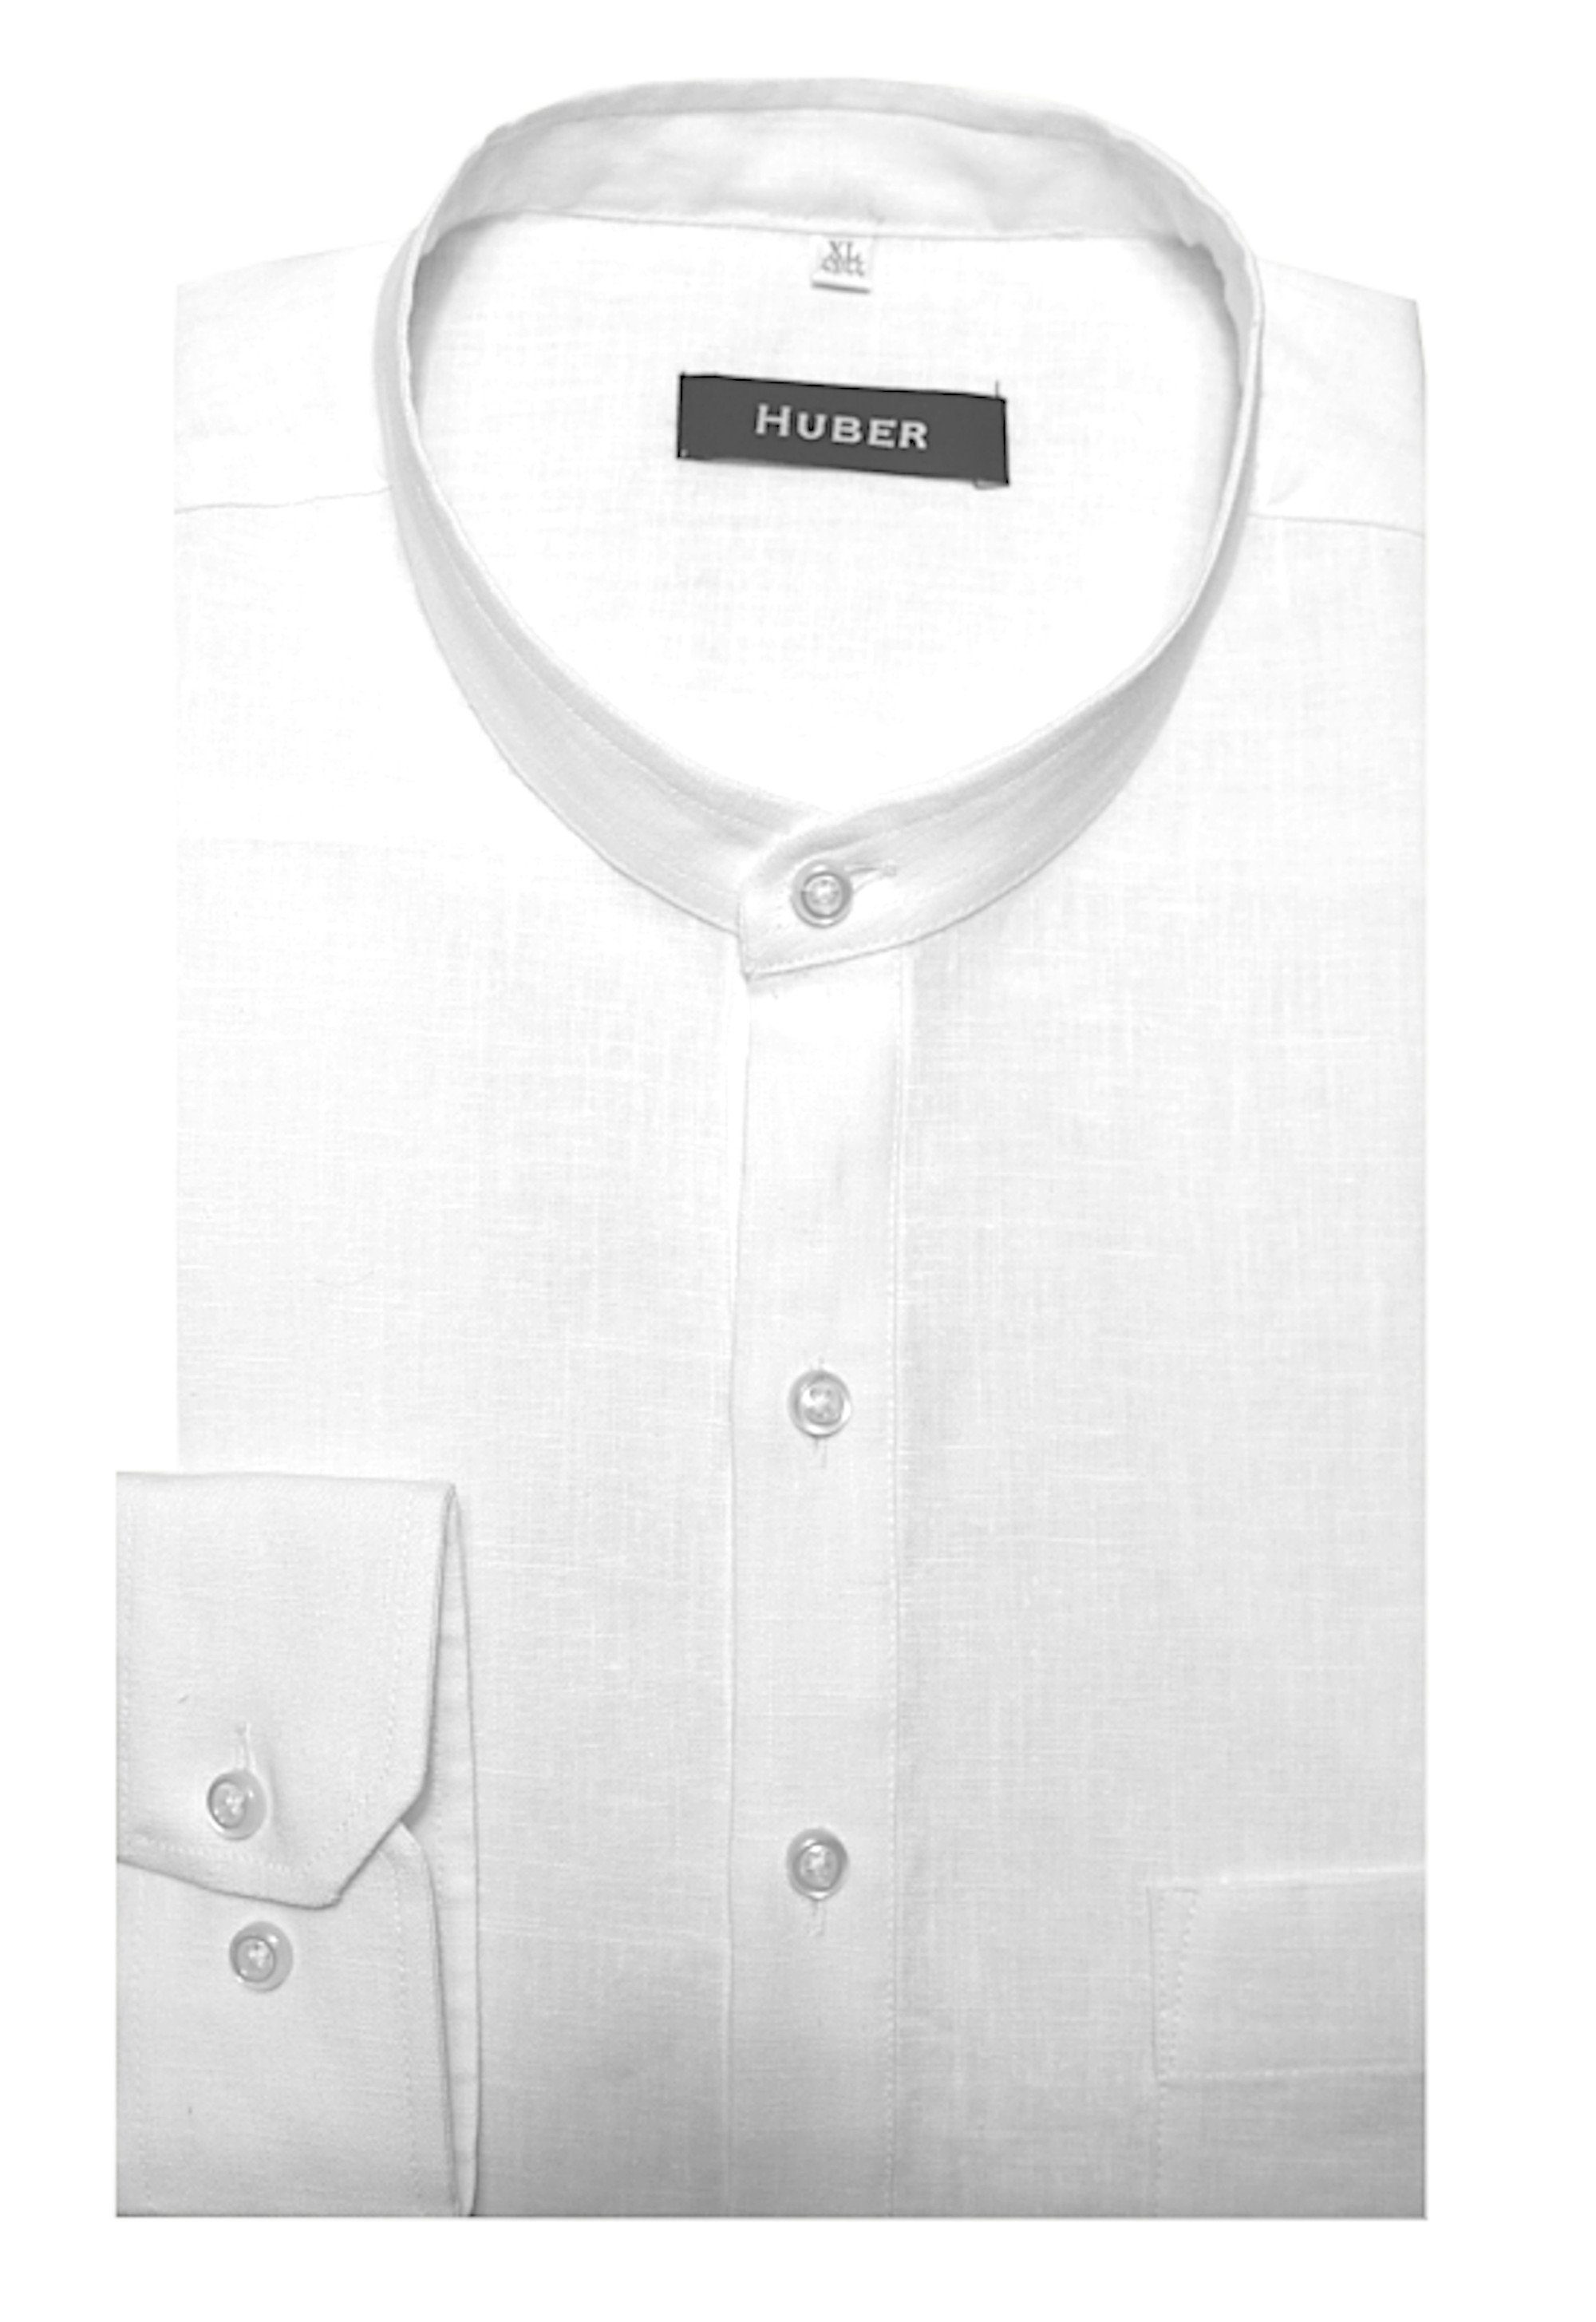 100% Leinenhemd Huber in Hemden EU Regular weiß HU-0501 Stehkragen, Leinen Schlupfhemd Made mit